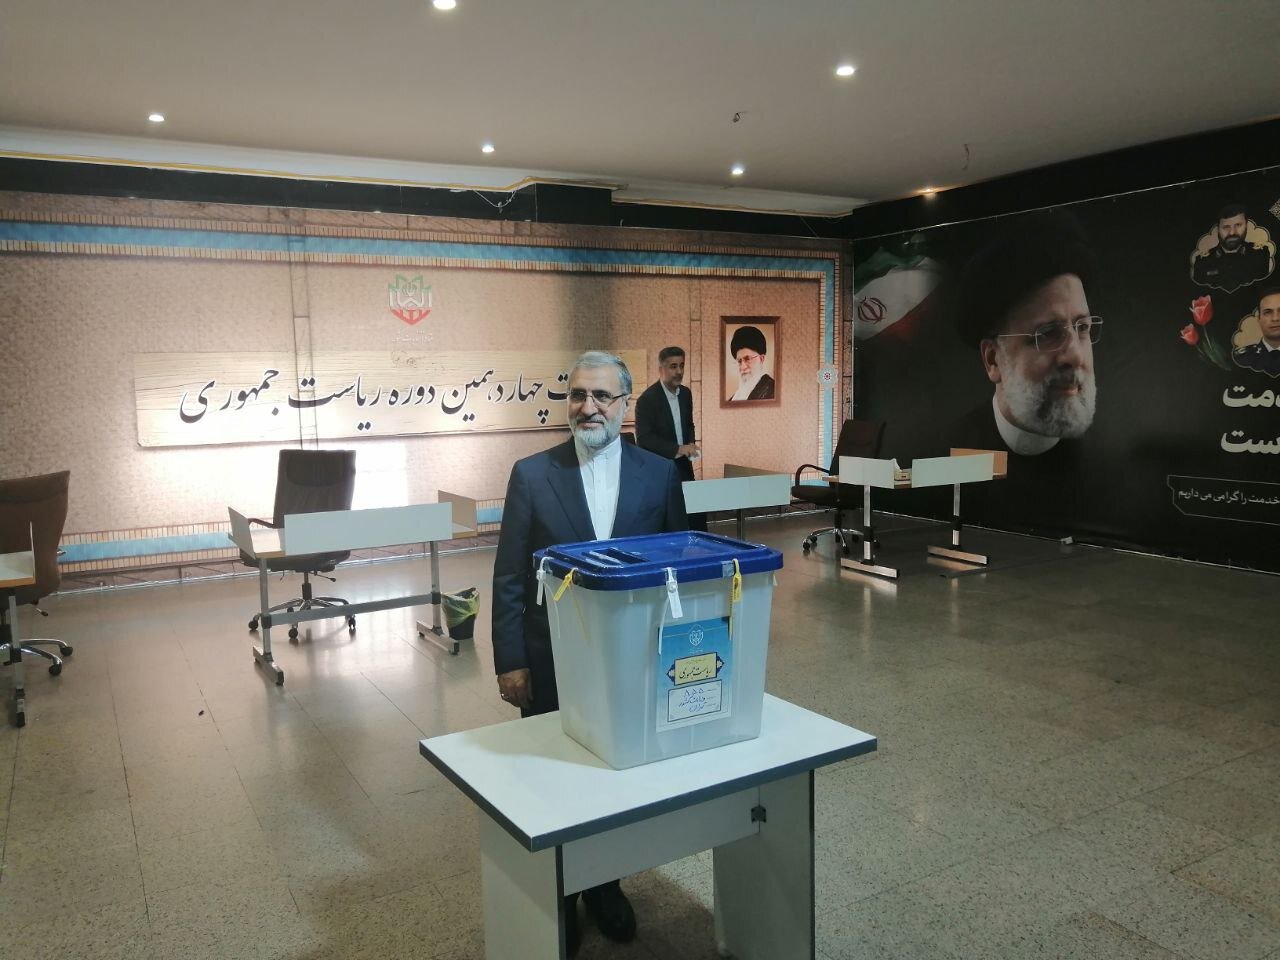 عکس فرمانده بلندپایه ارتش با پوشش متفاوت درحال رأی دادن / آملی لاریجانی و دریادار ایرانی هم پای صندوق رفتند / مخبر بازدید کرد و رأی داد 3